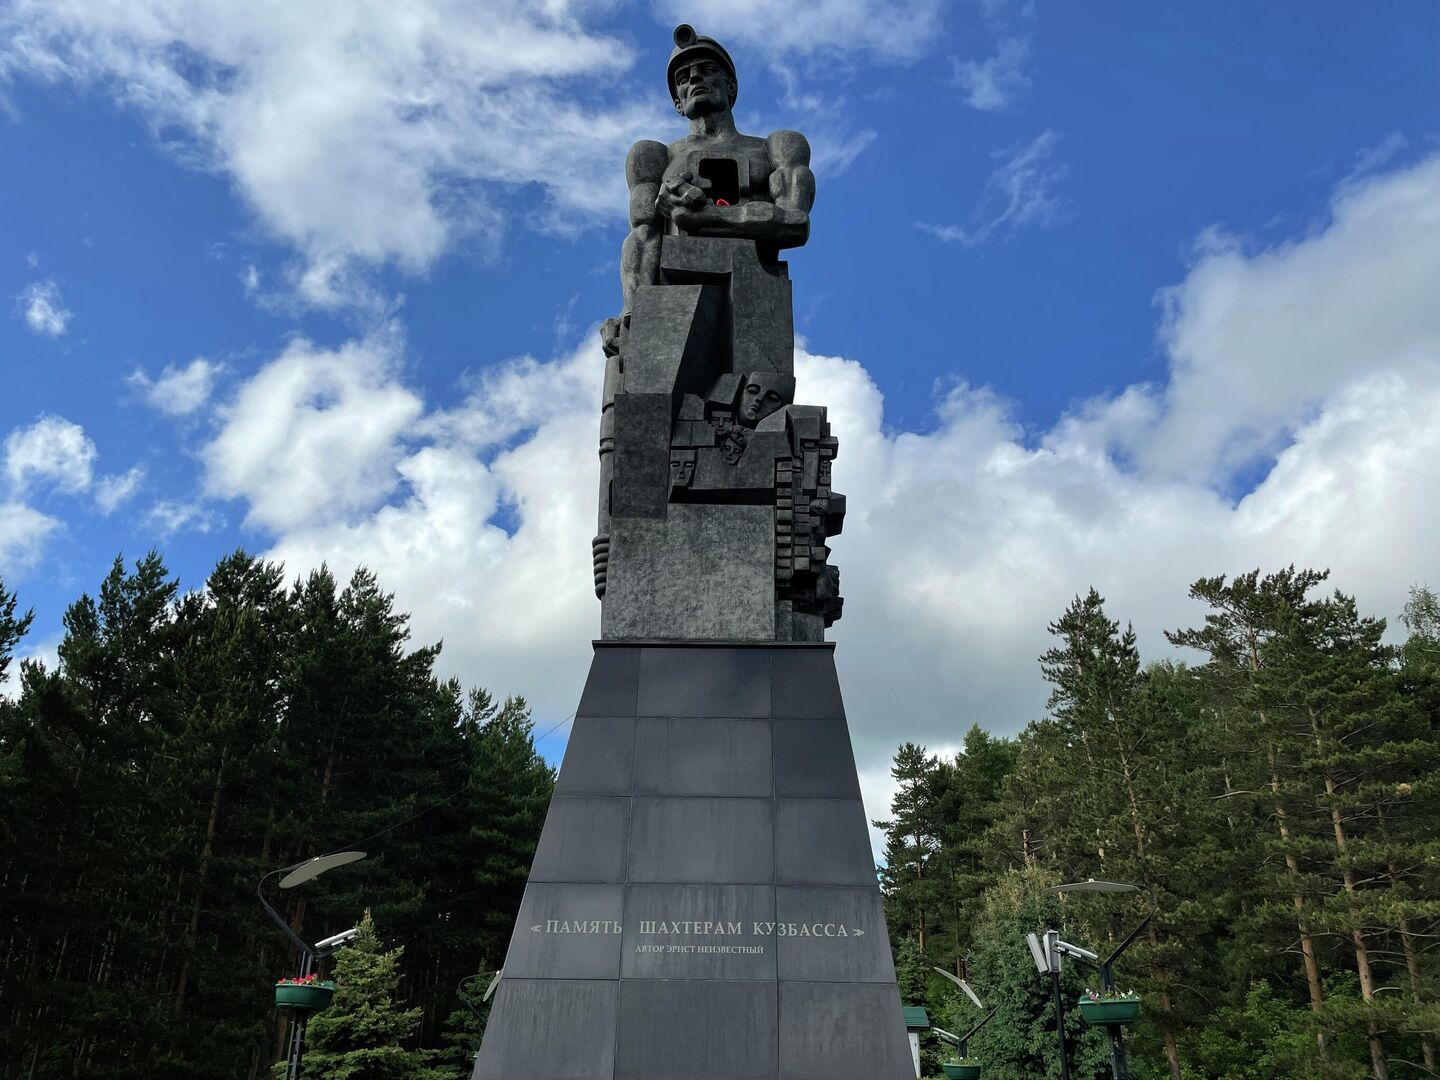 Монумент “Память шахтерам Кузбасса” Эрнста Неизвестного